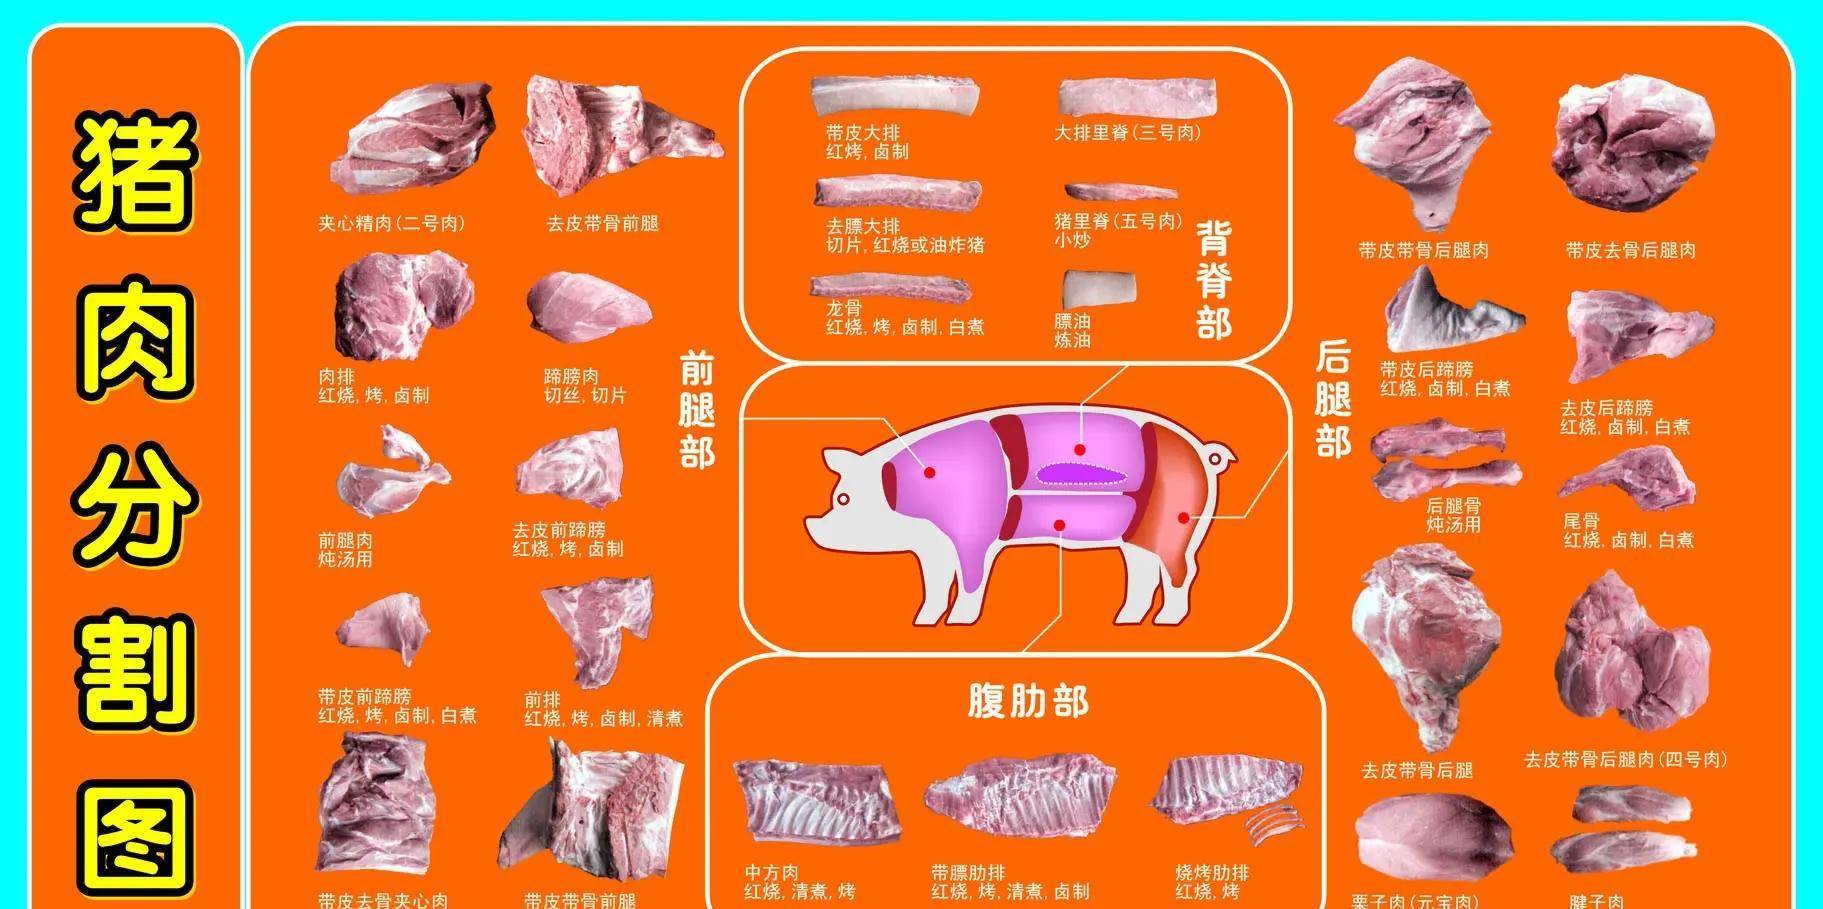 猪的全身骨骼图解图片